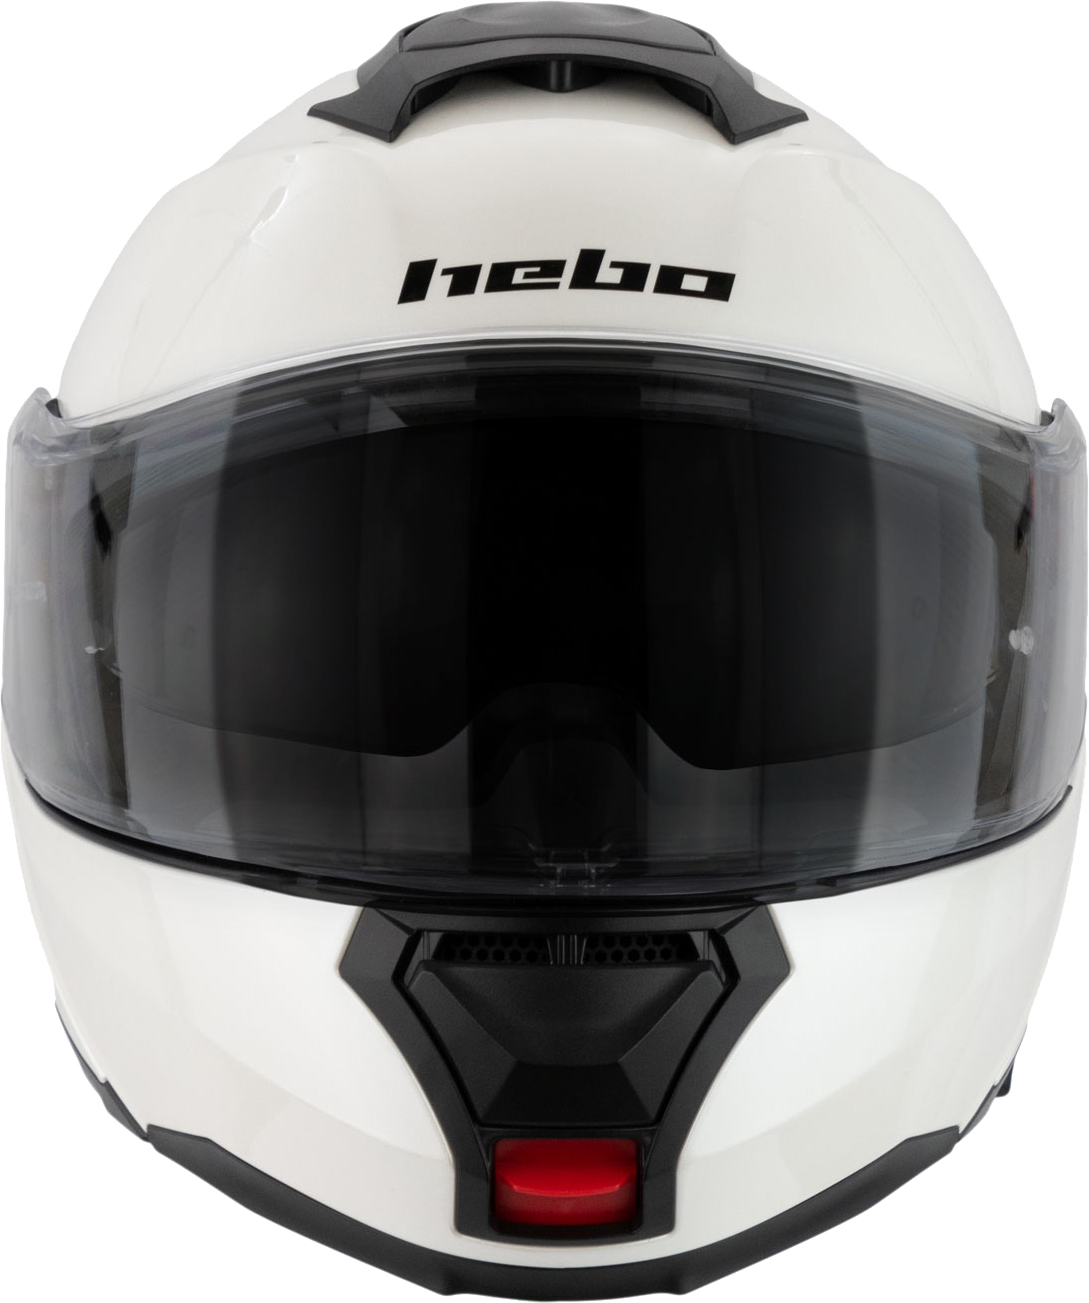 Helmet Flip Up H-272 TOURER IV White HEBO 